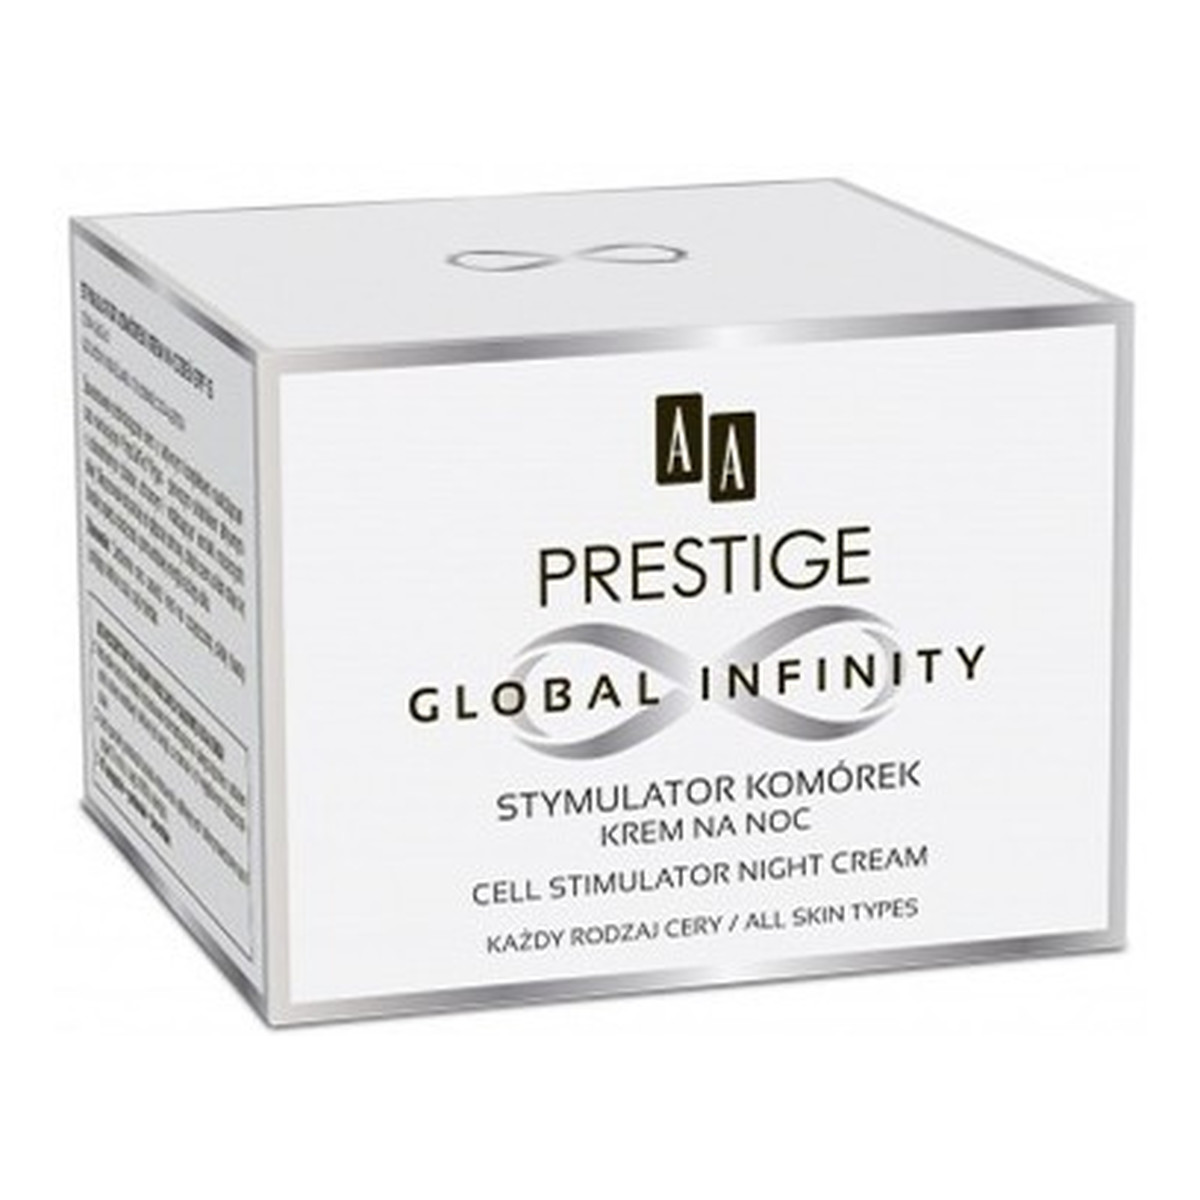 AA Prestige Global Infinity Stymulator Komórek Krem na noc do każdego rodzaj cery 50ml